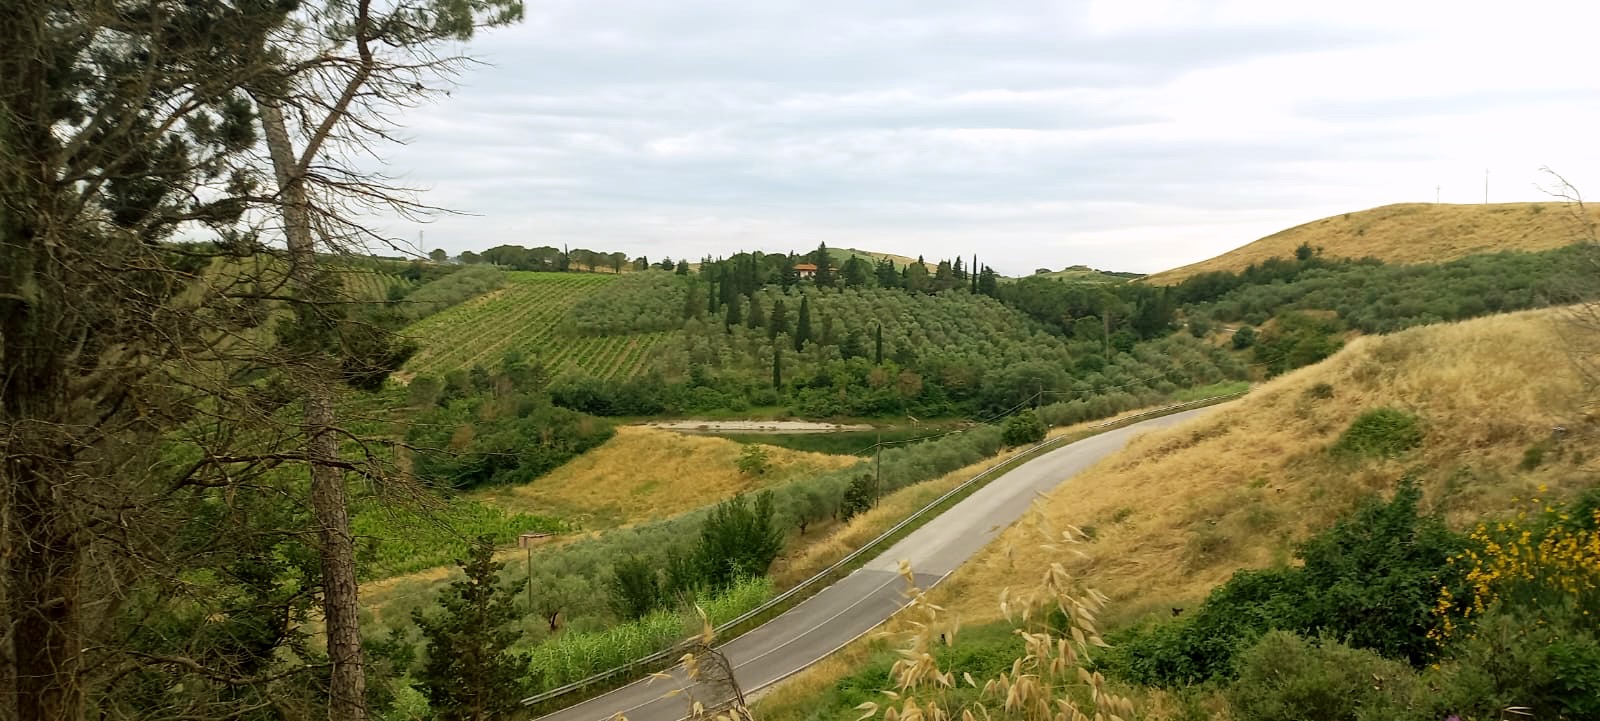 Uitzicht vanaf een B&B in Toscane met groene en gele velden